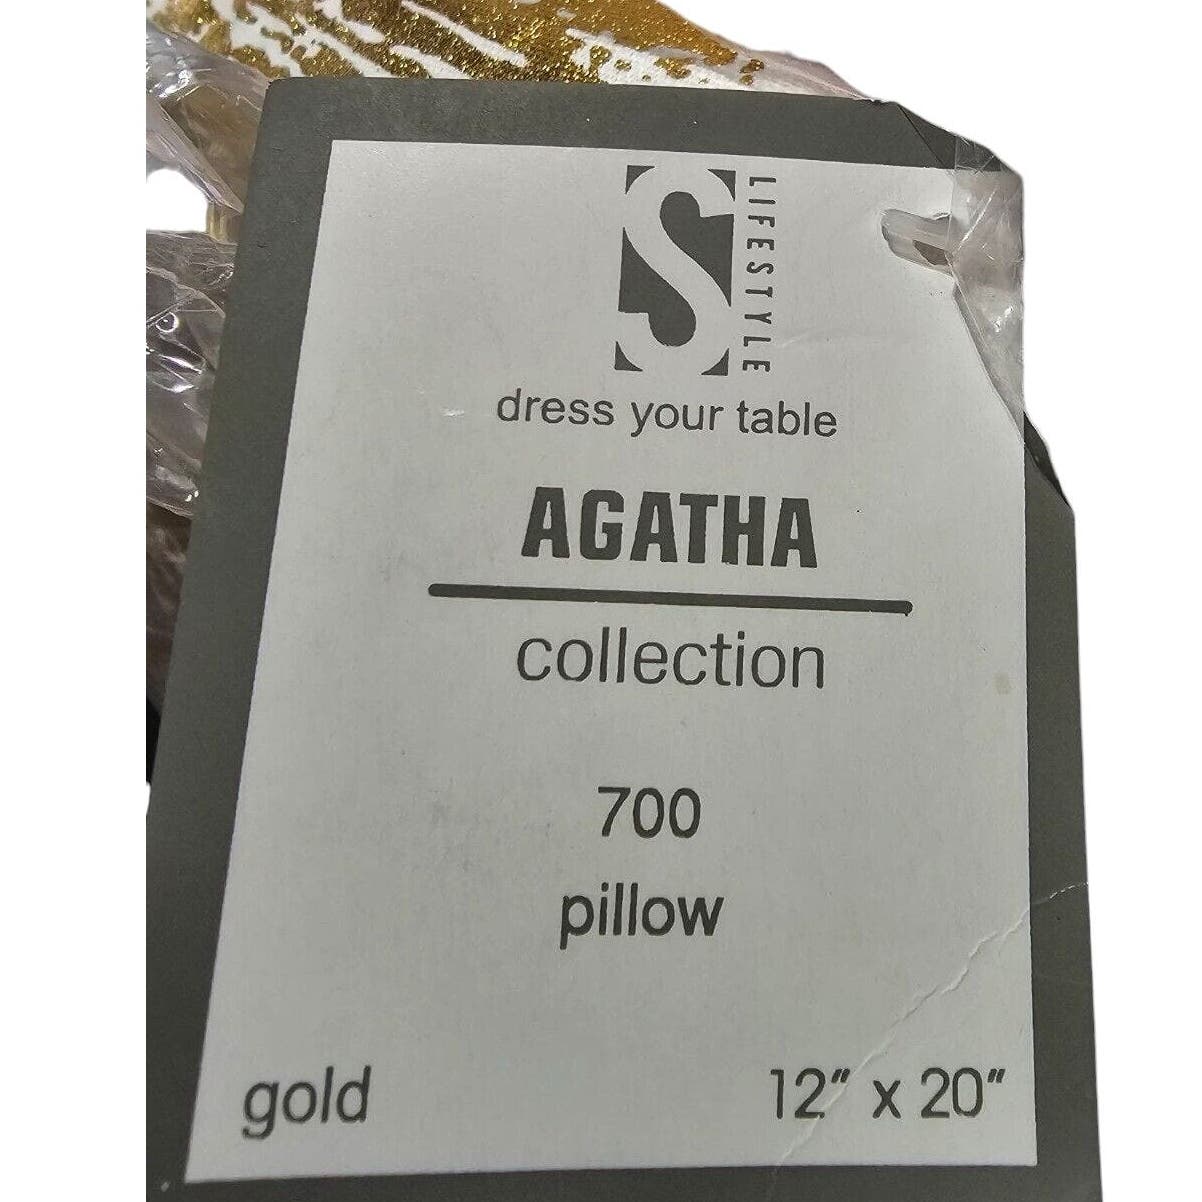 AGATHA Glamorous Metallic Throw Pillow with Case 12x20"